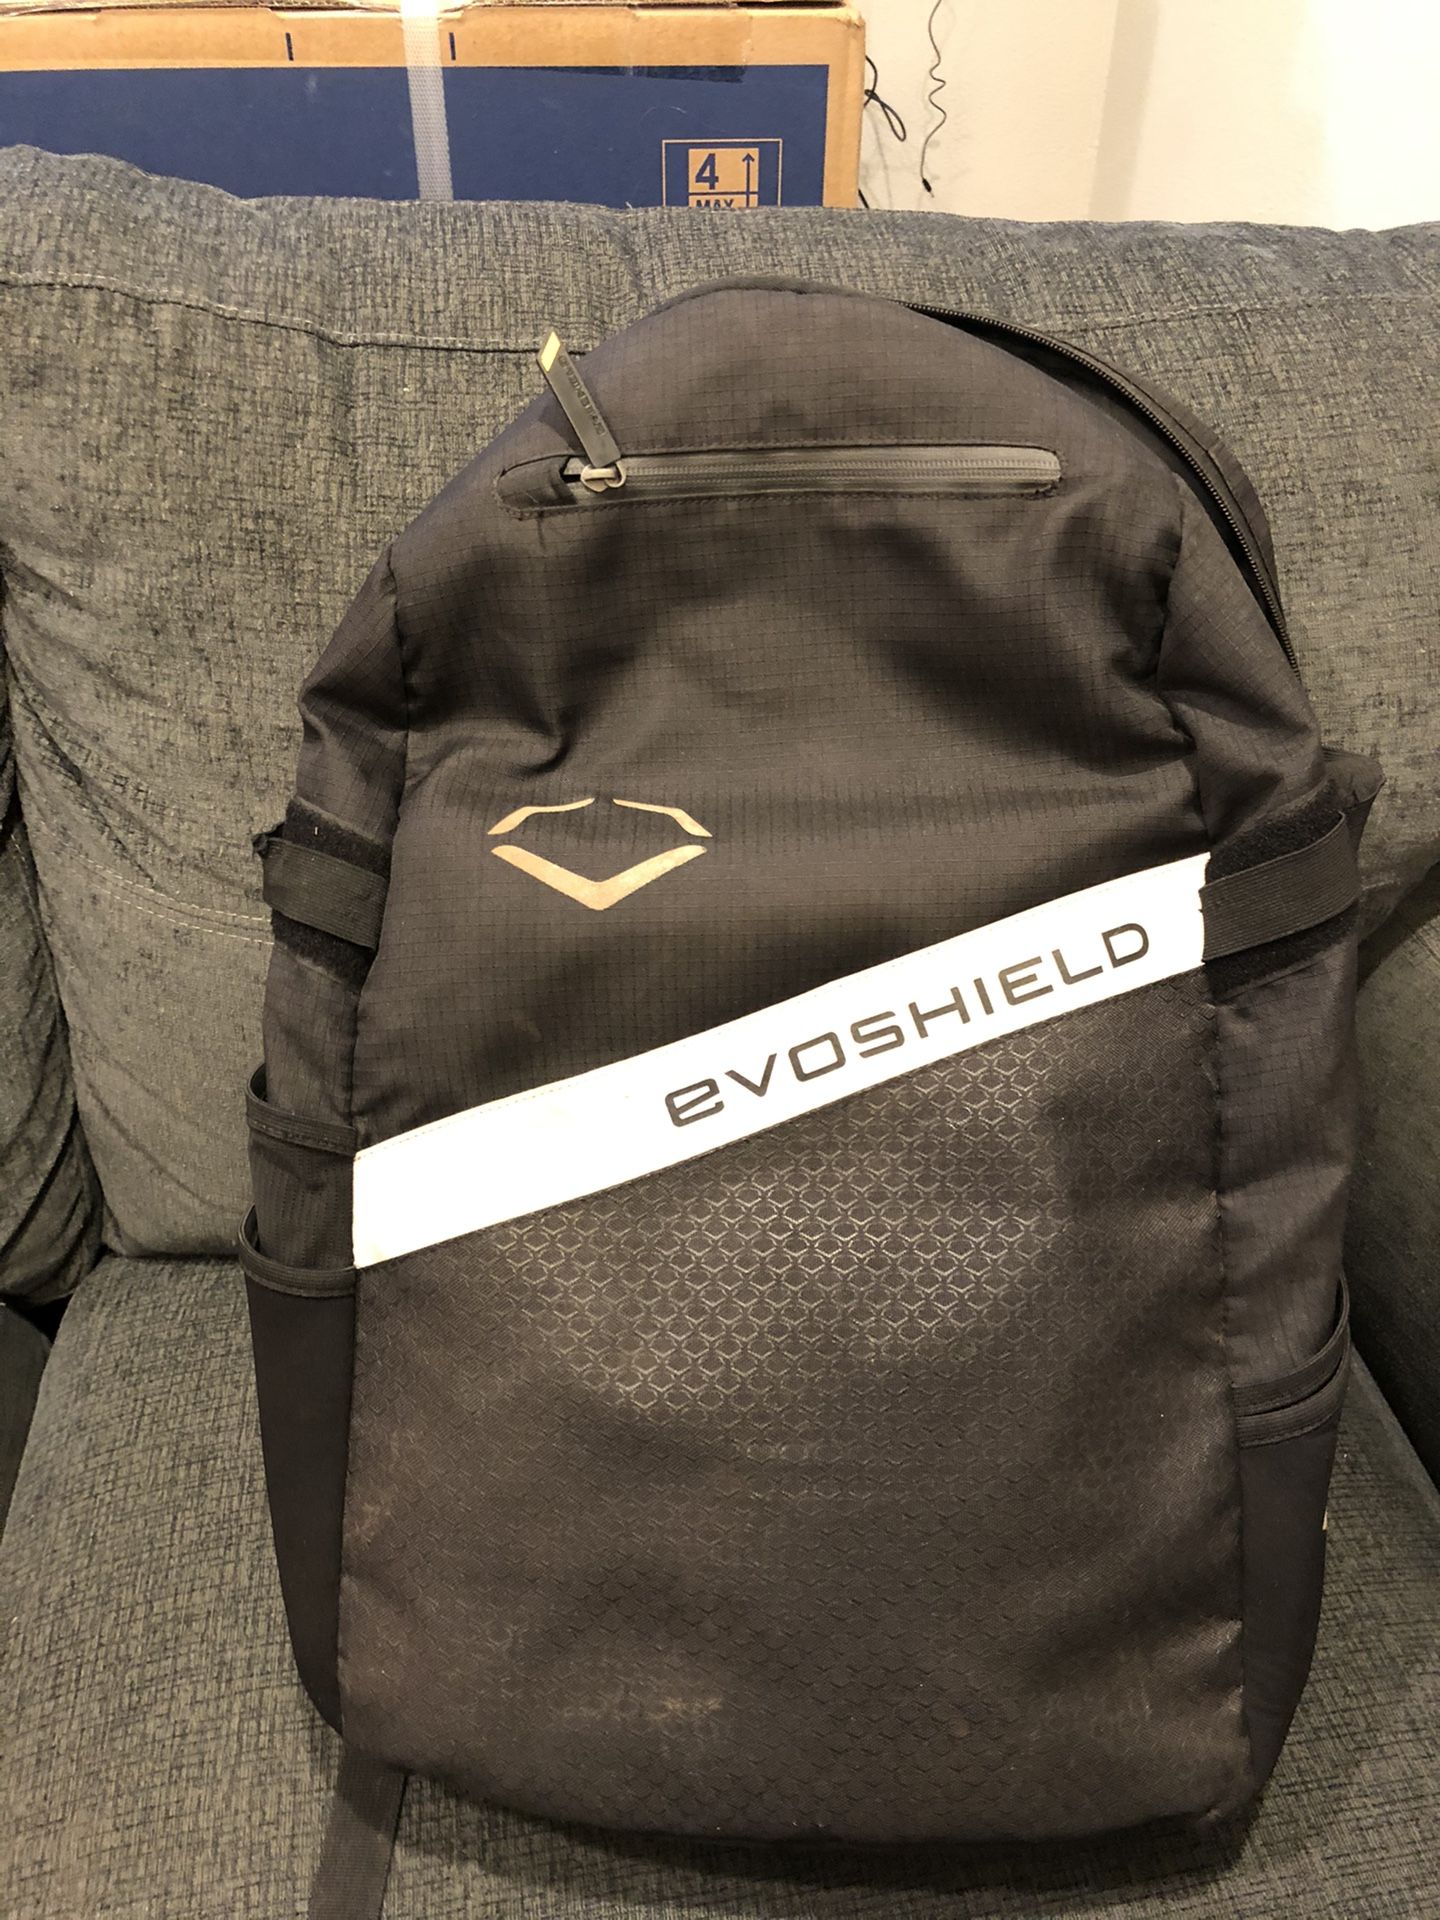 Evoshield Baseball/Softball Bag